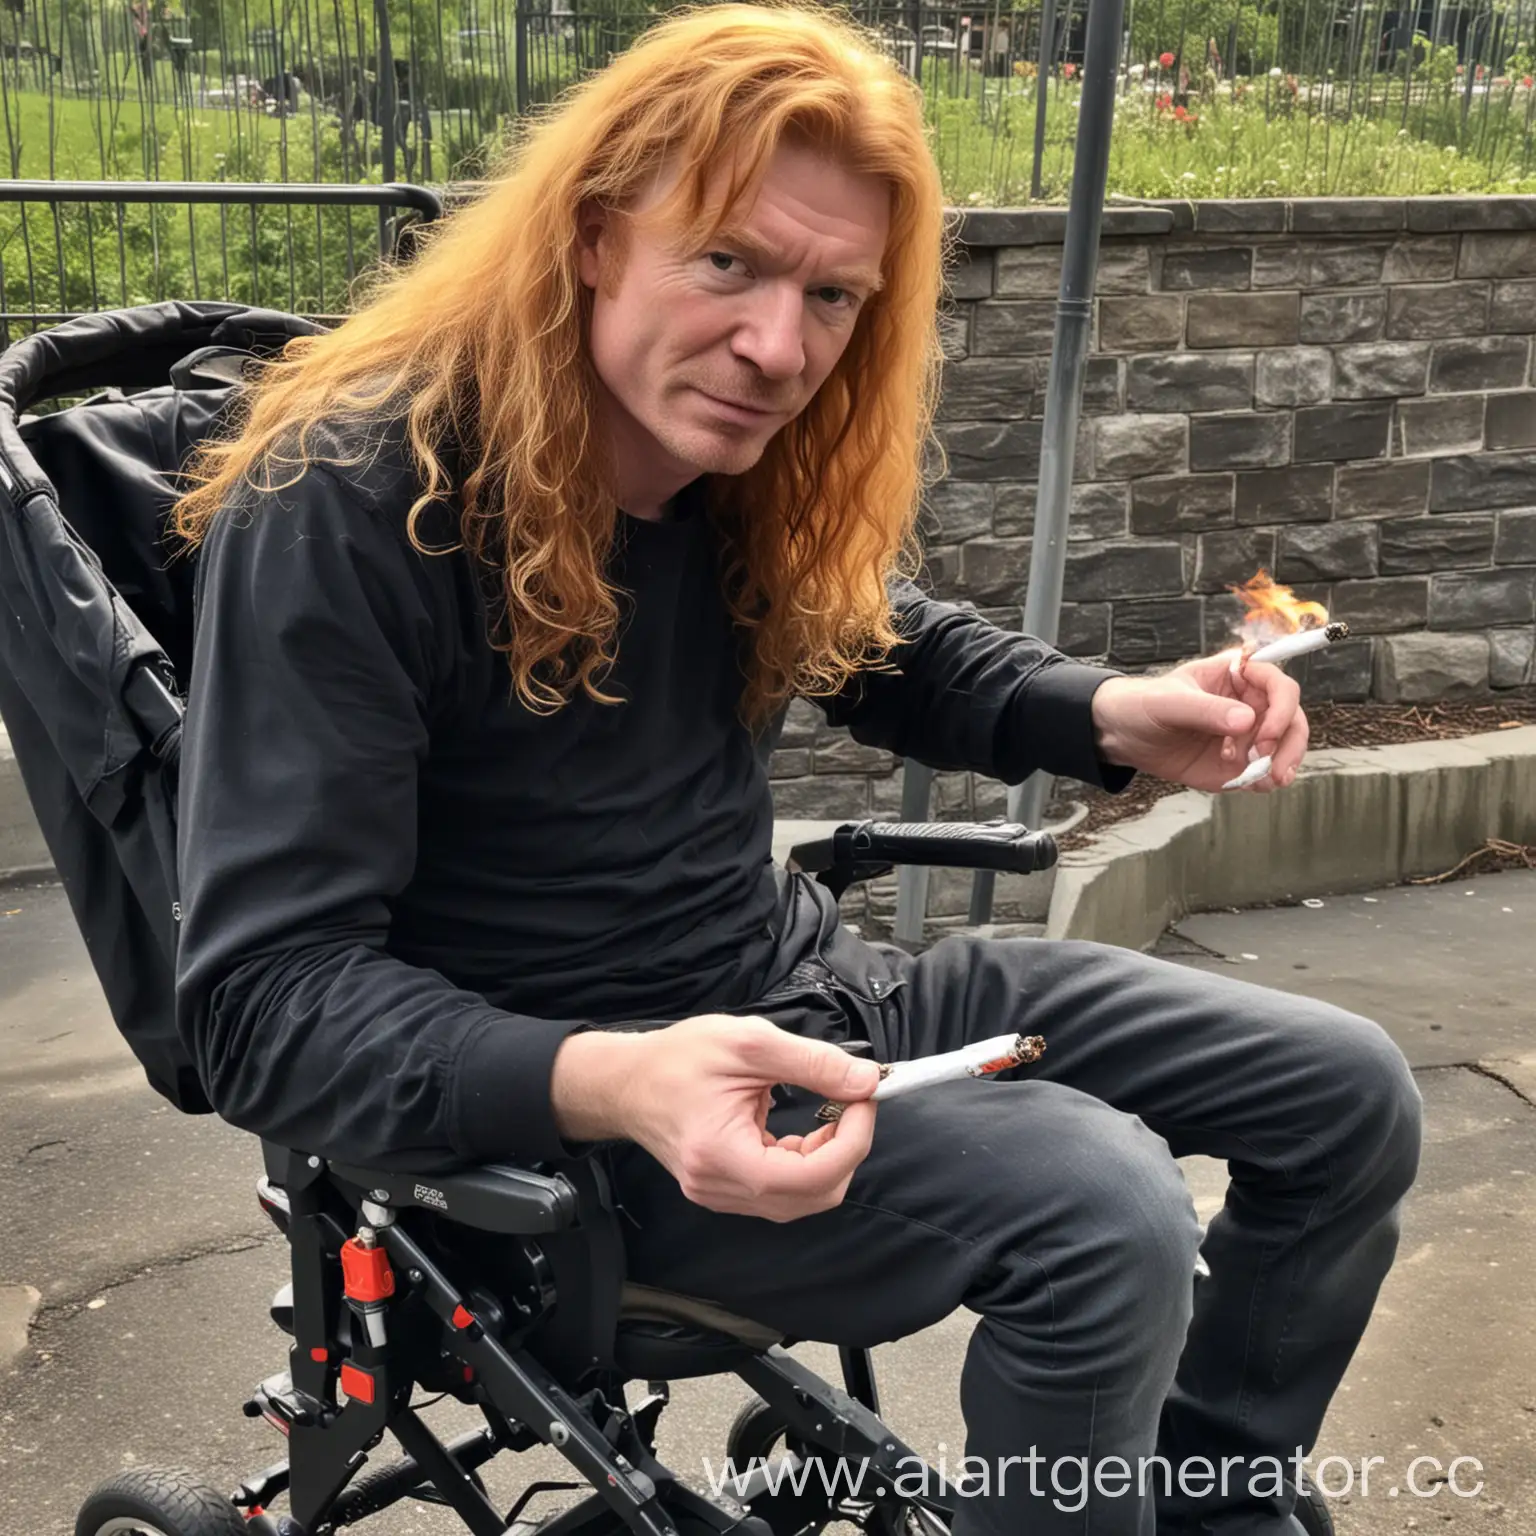 Дэйв Мастейн бросает бычок от сигареты в коляску с ребенком 